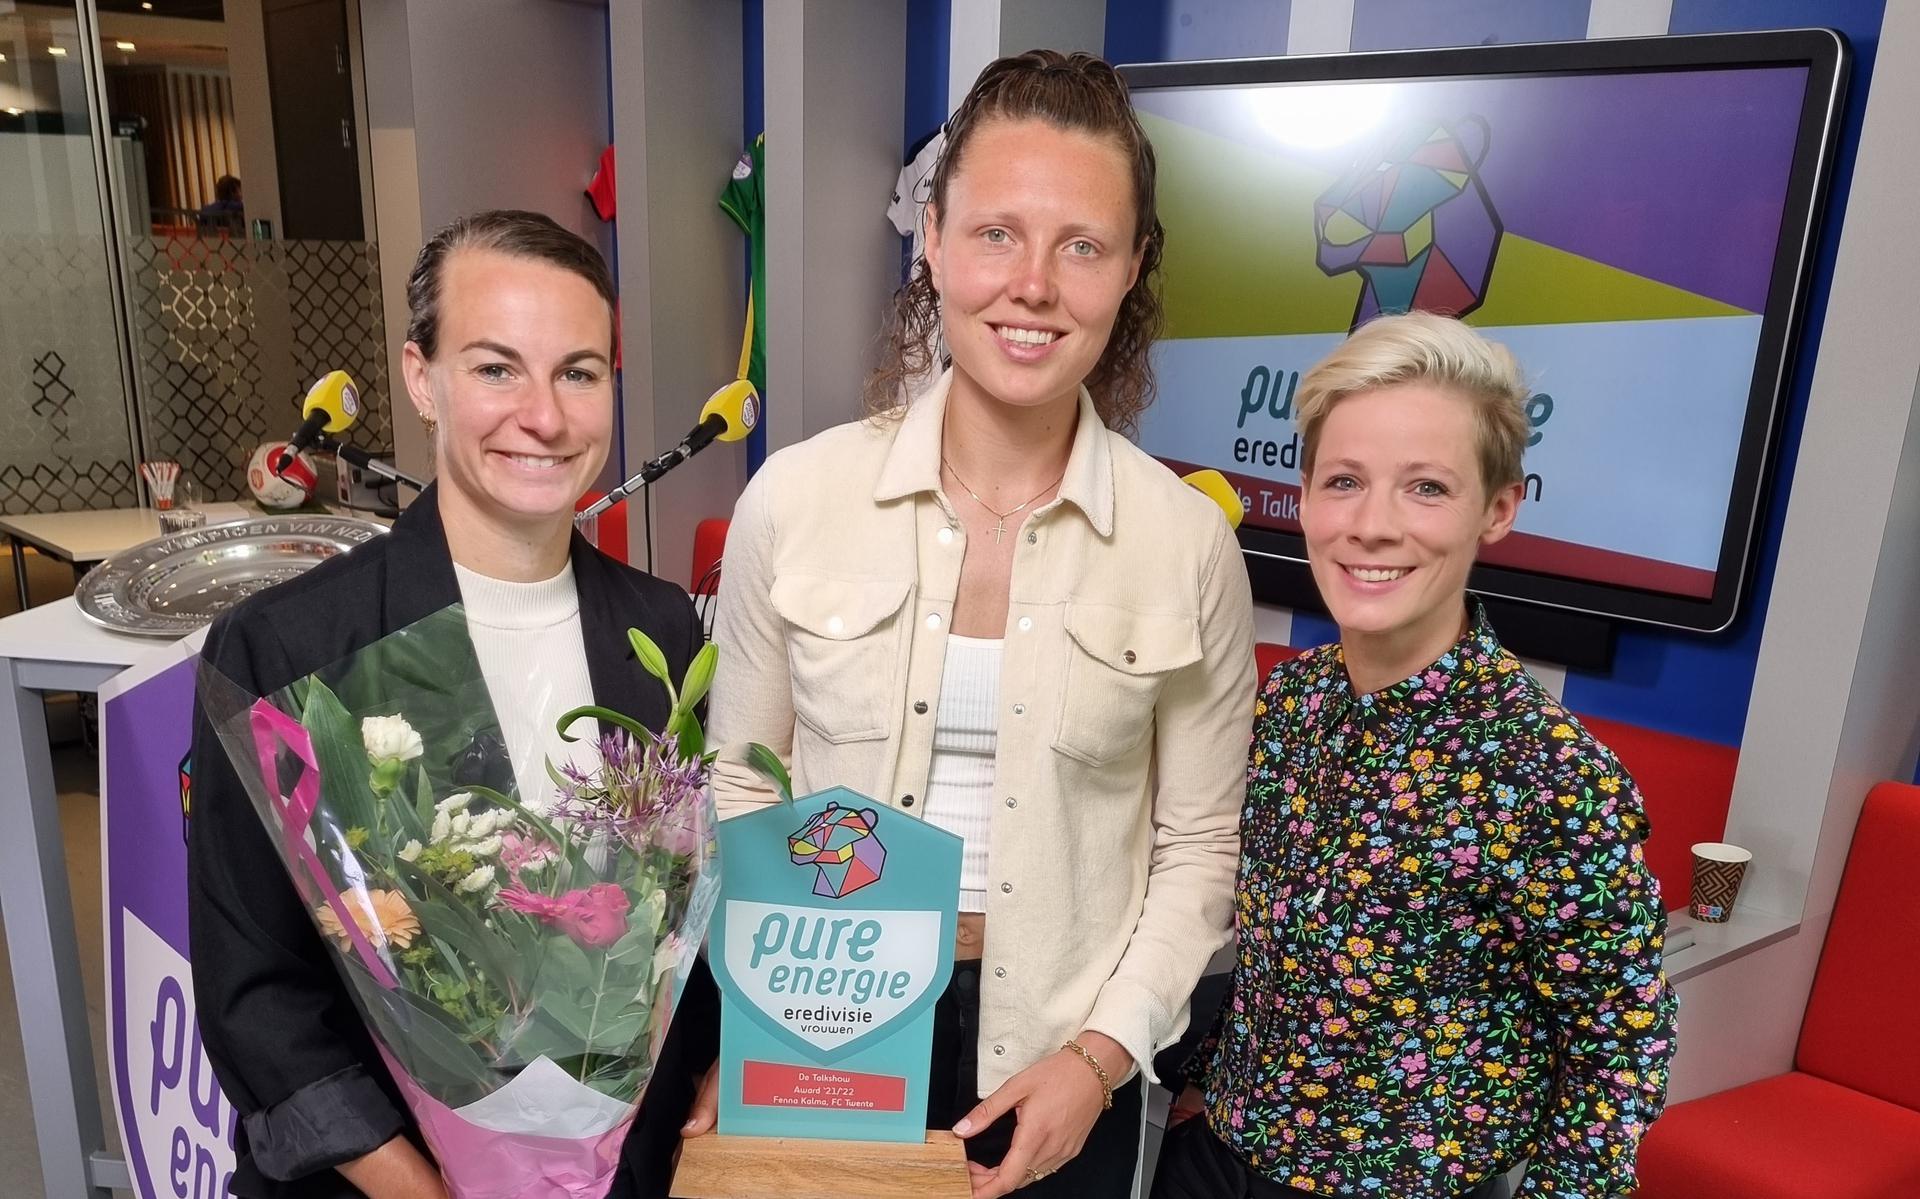 Fenna Kalma (m) met de prijs van de beste speelster van de eredivisie; links ploeggenote Renate Jansen, rechts presentatrice Marleen van Oortmarssen. 